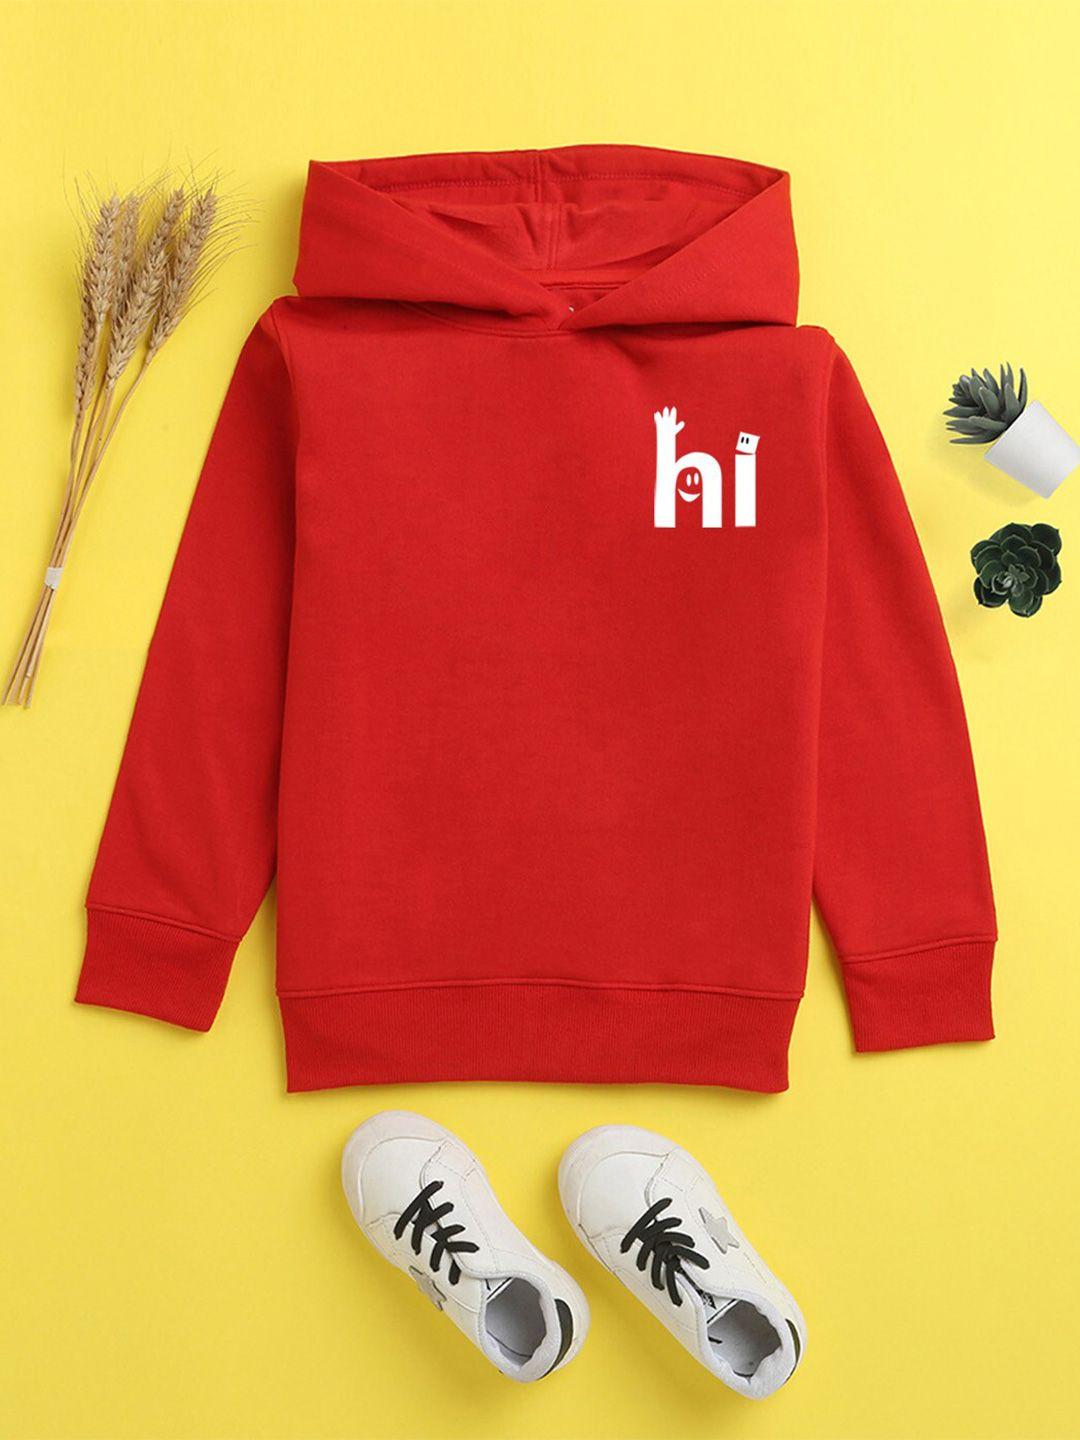 nusyl unisex kids red printed hooded sweatshirt